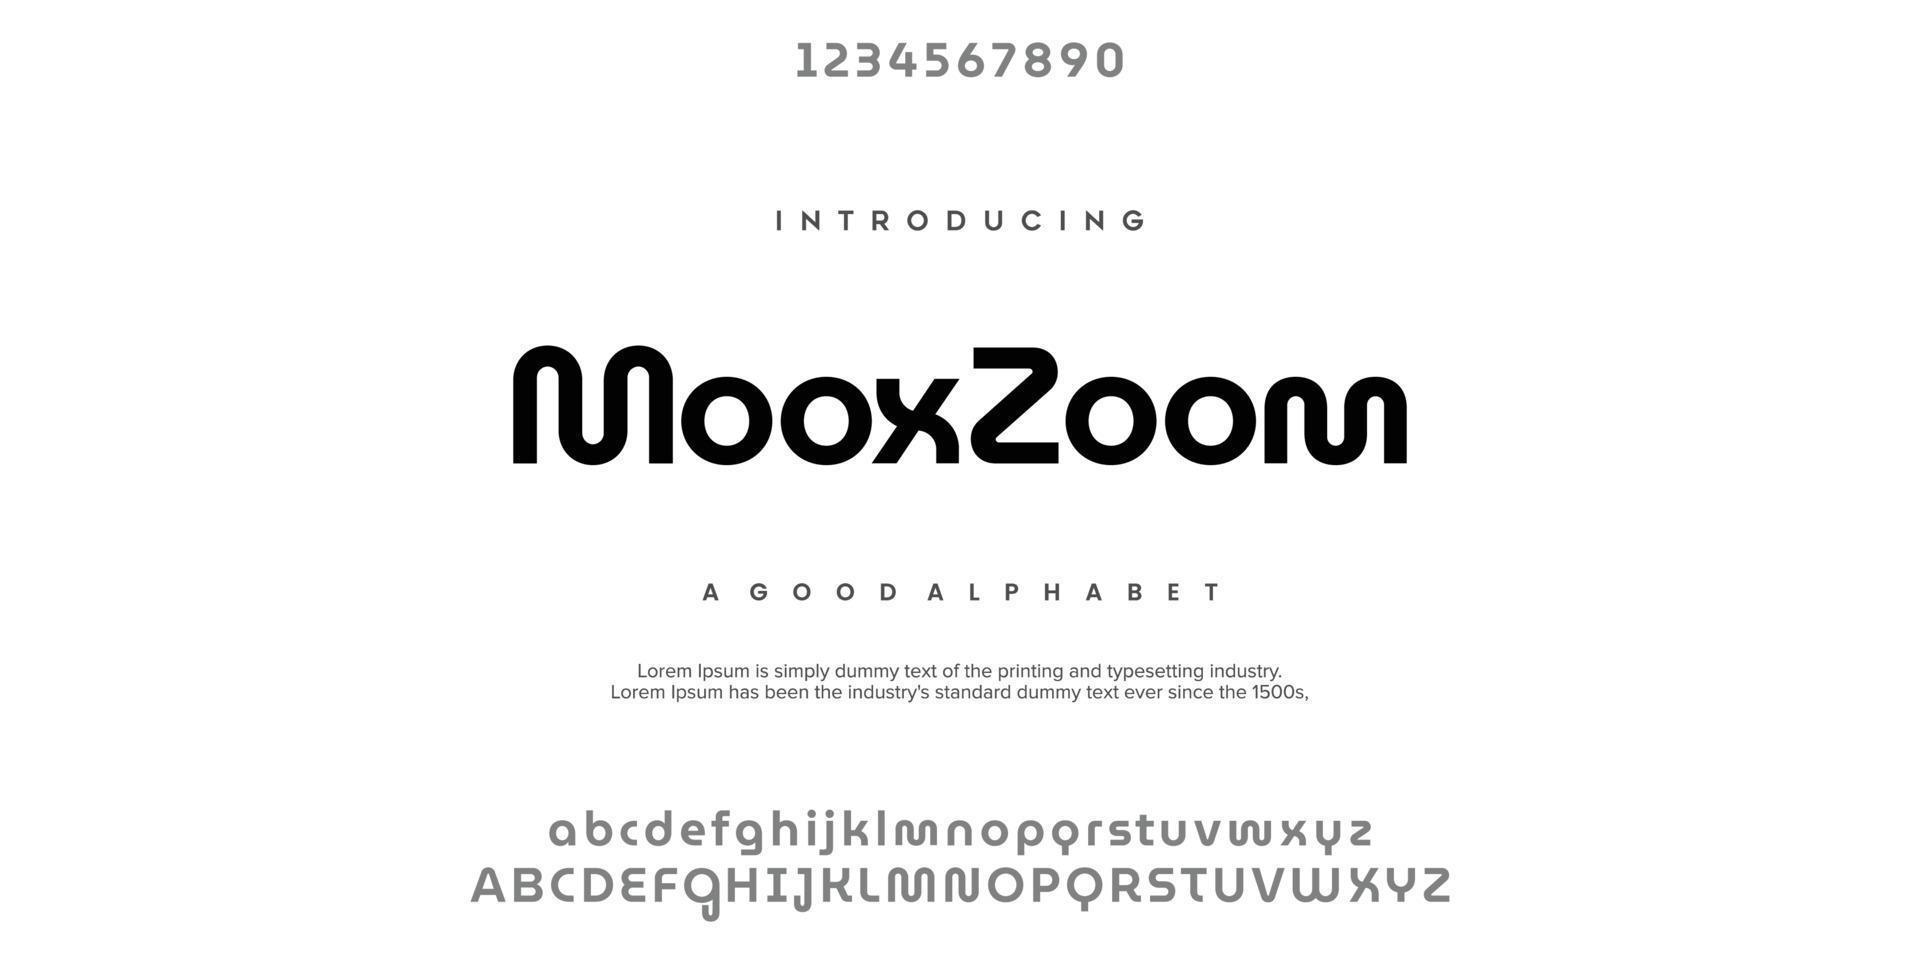 mooxzoom font alfabeto moderno minimale astratto. illustrazione vettoriale di tecnologia tipografica